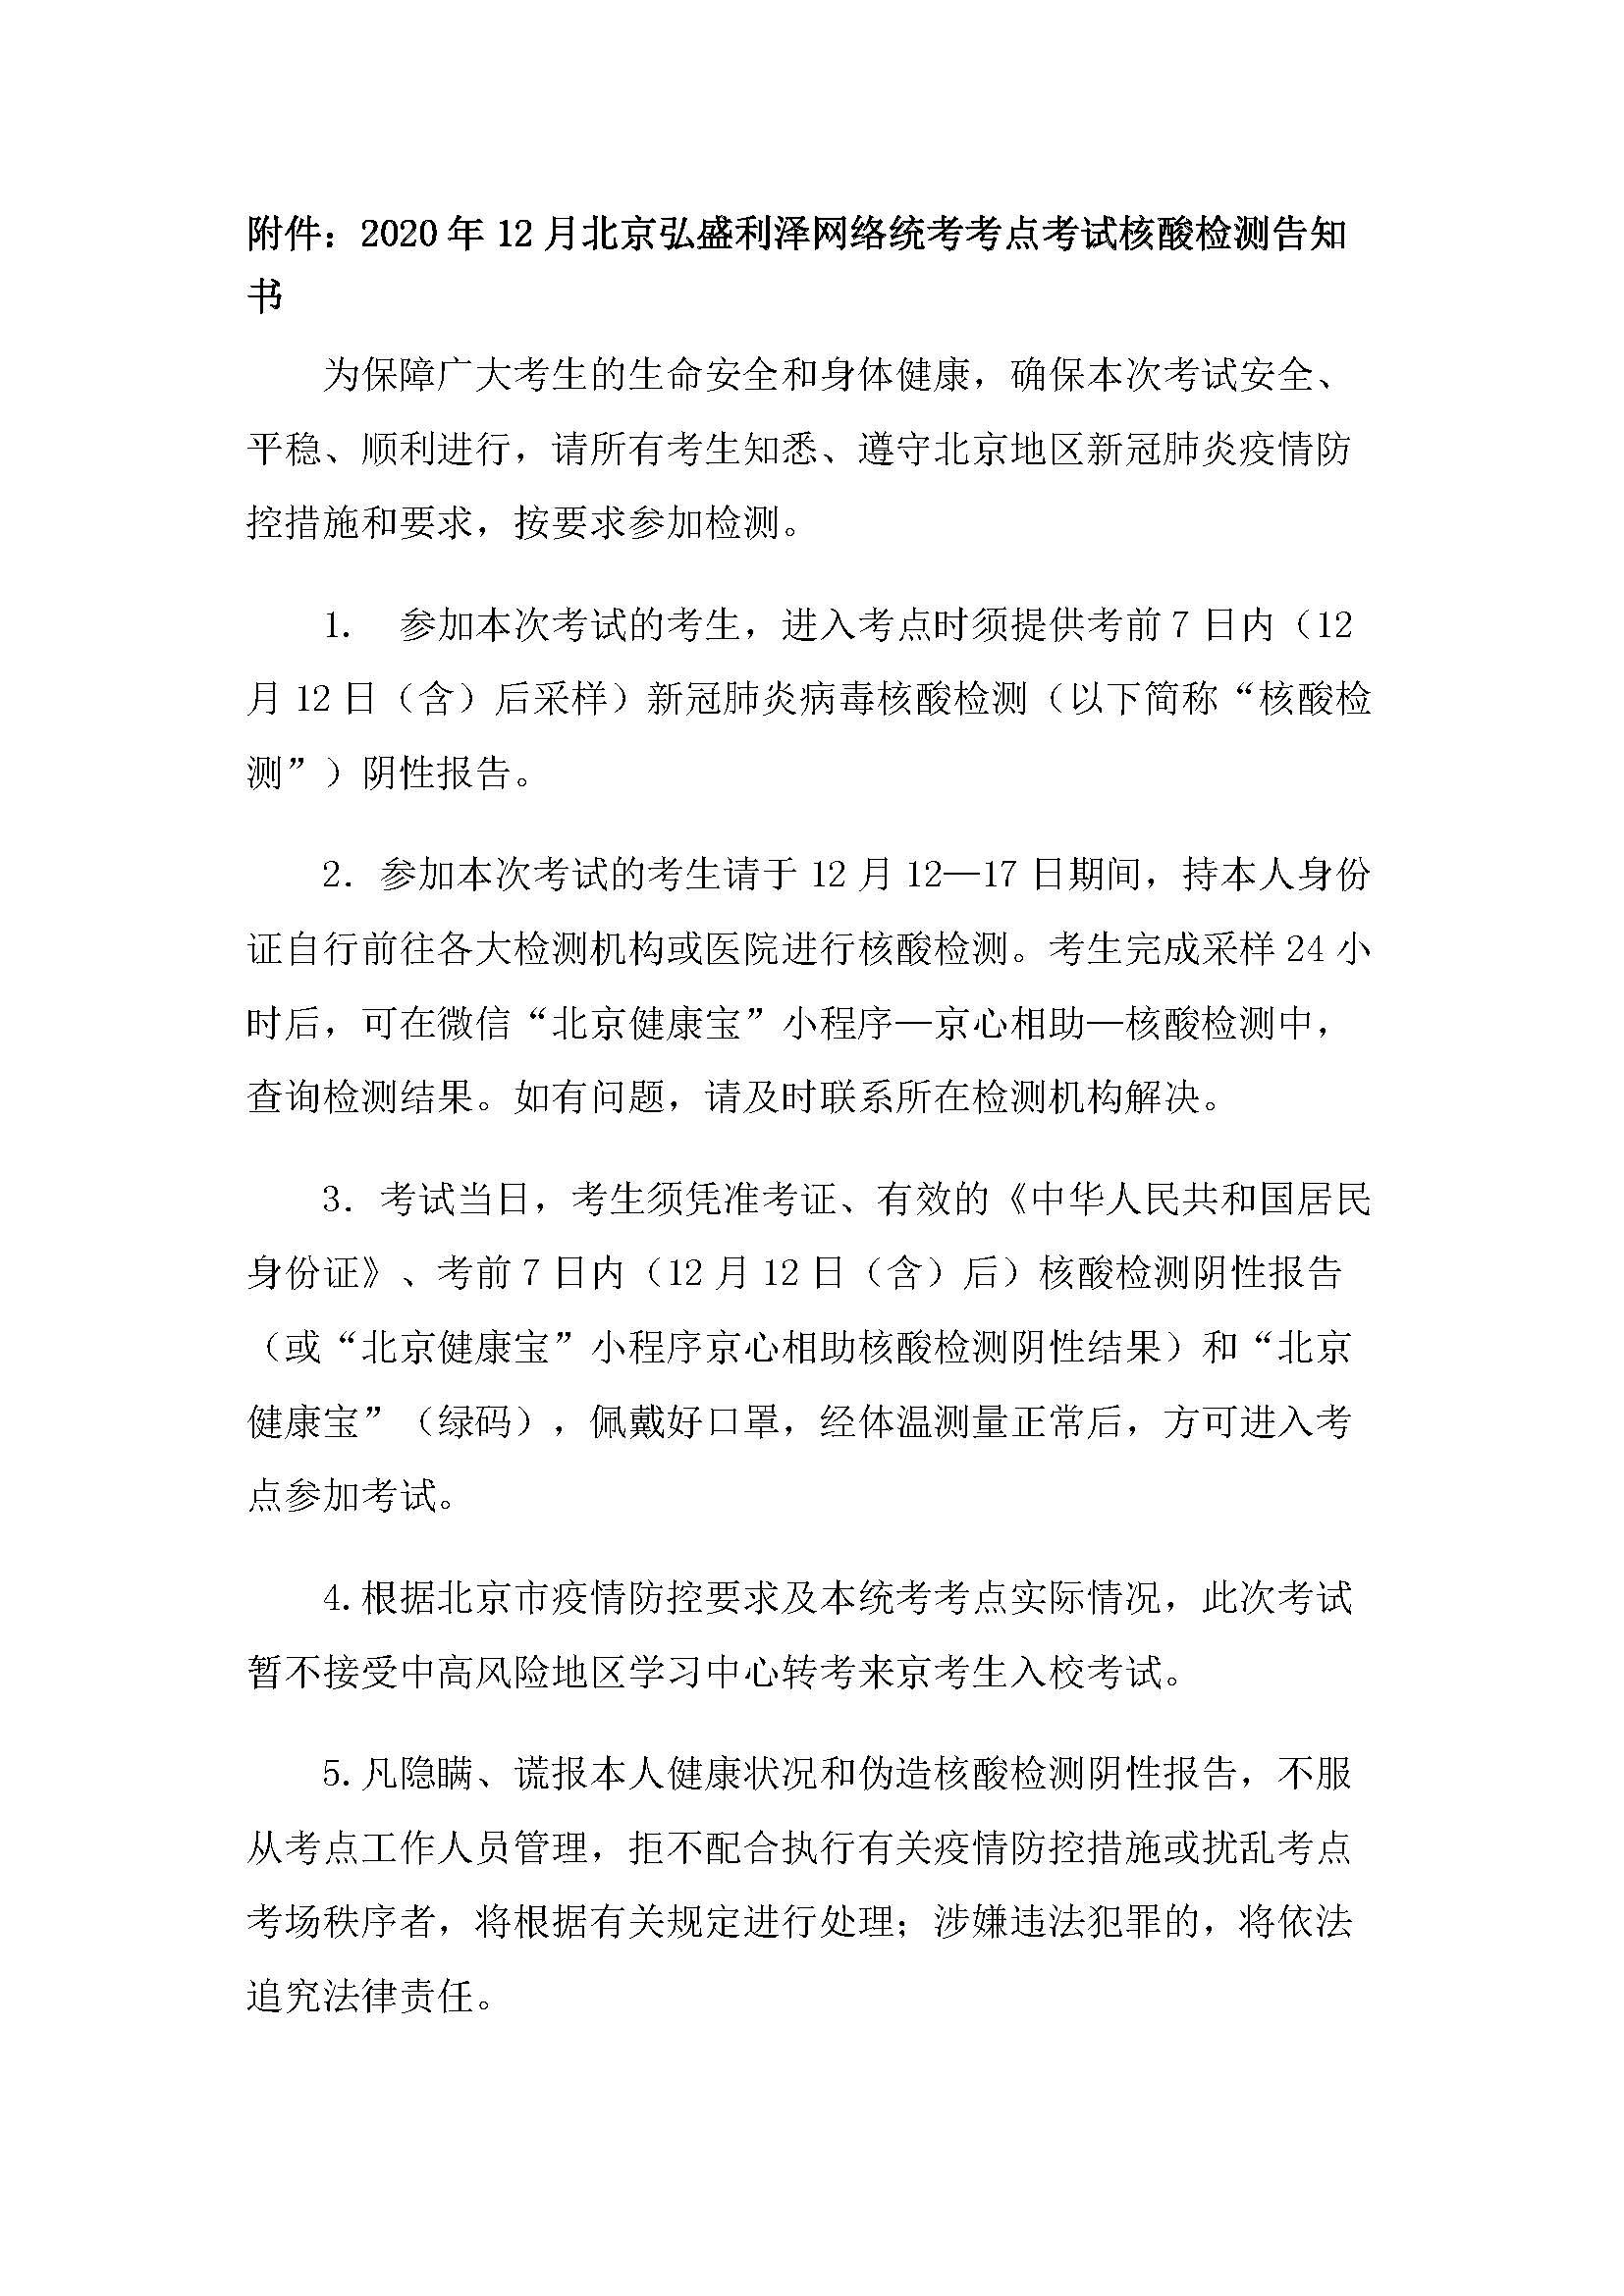 关于2020年12月统考北京弘盛利泽教育培训中心统考考点全部考生须凭7日内核酸检测阴性报告参加考试的通知_499_页面_2.jpg